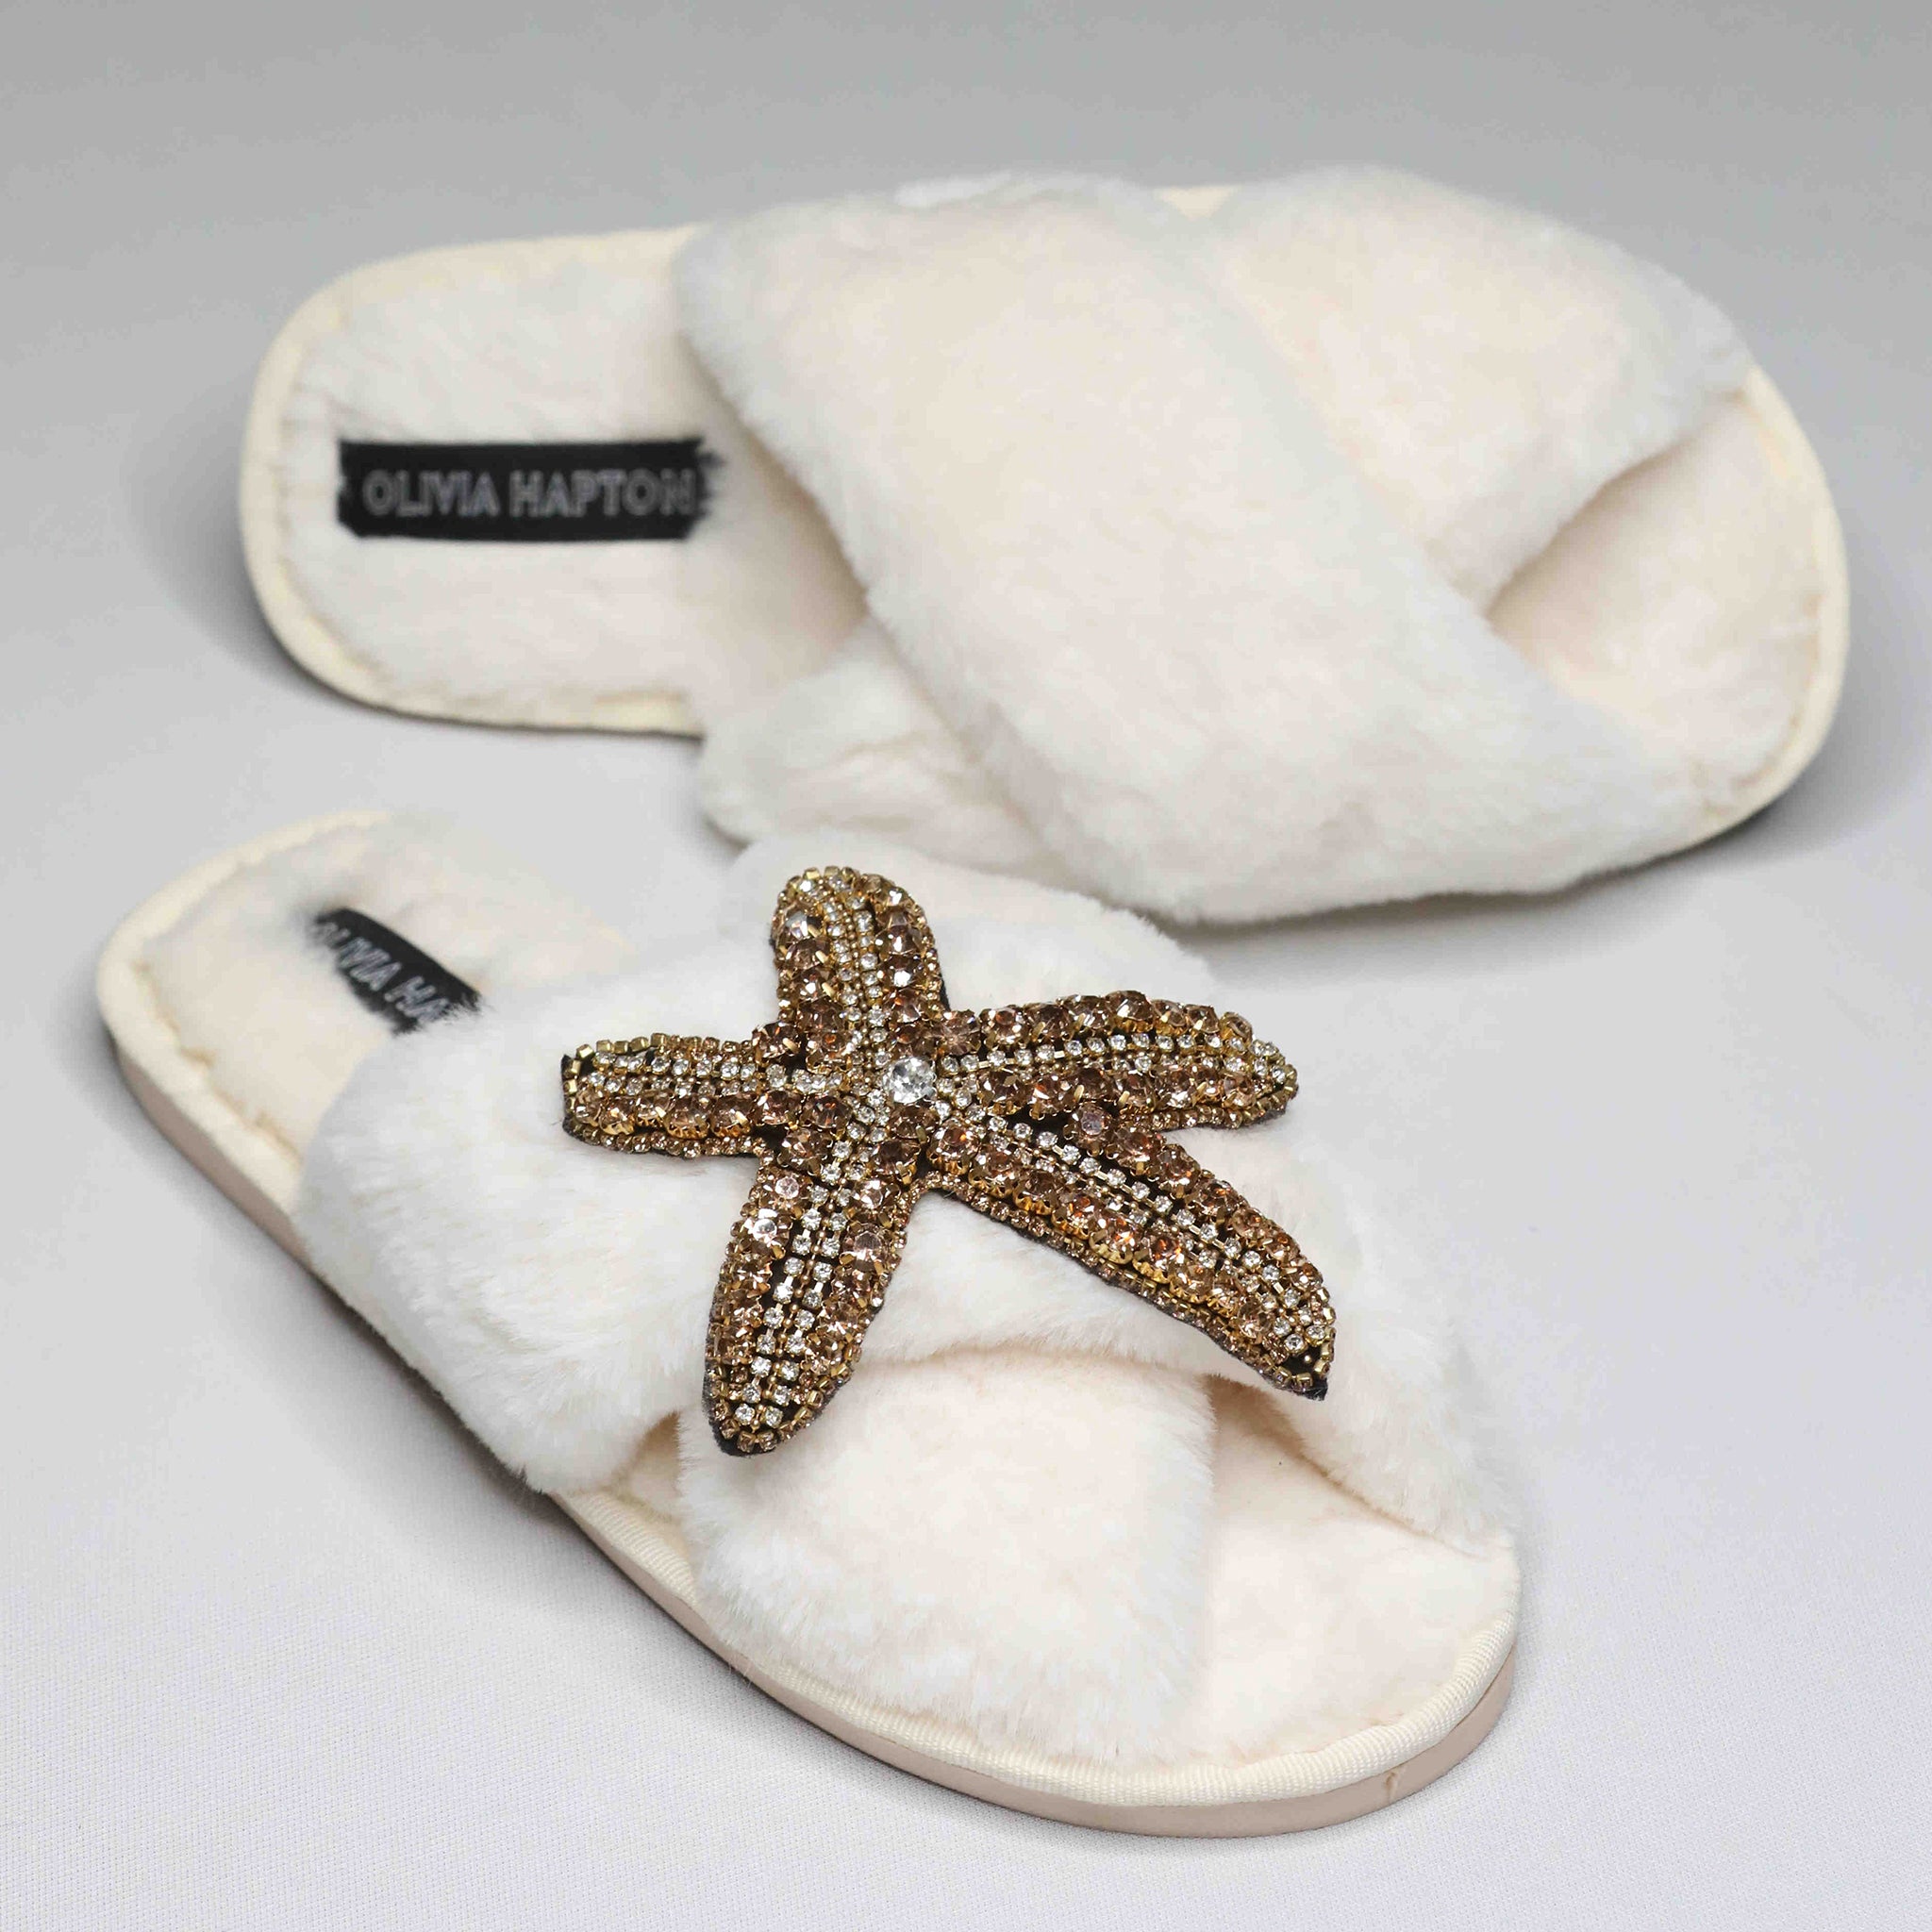 Olivia Hapton slipper cream - GOLD STAR